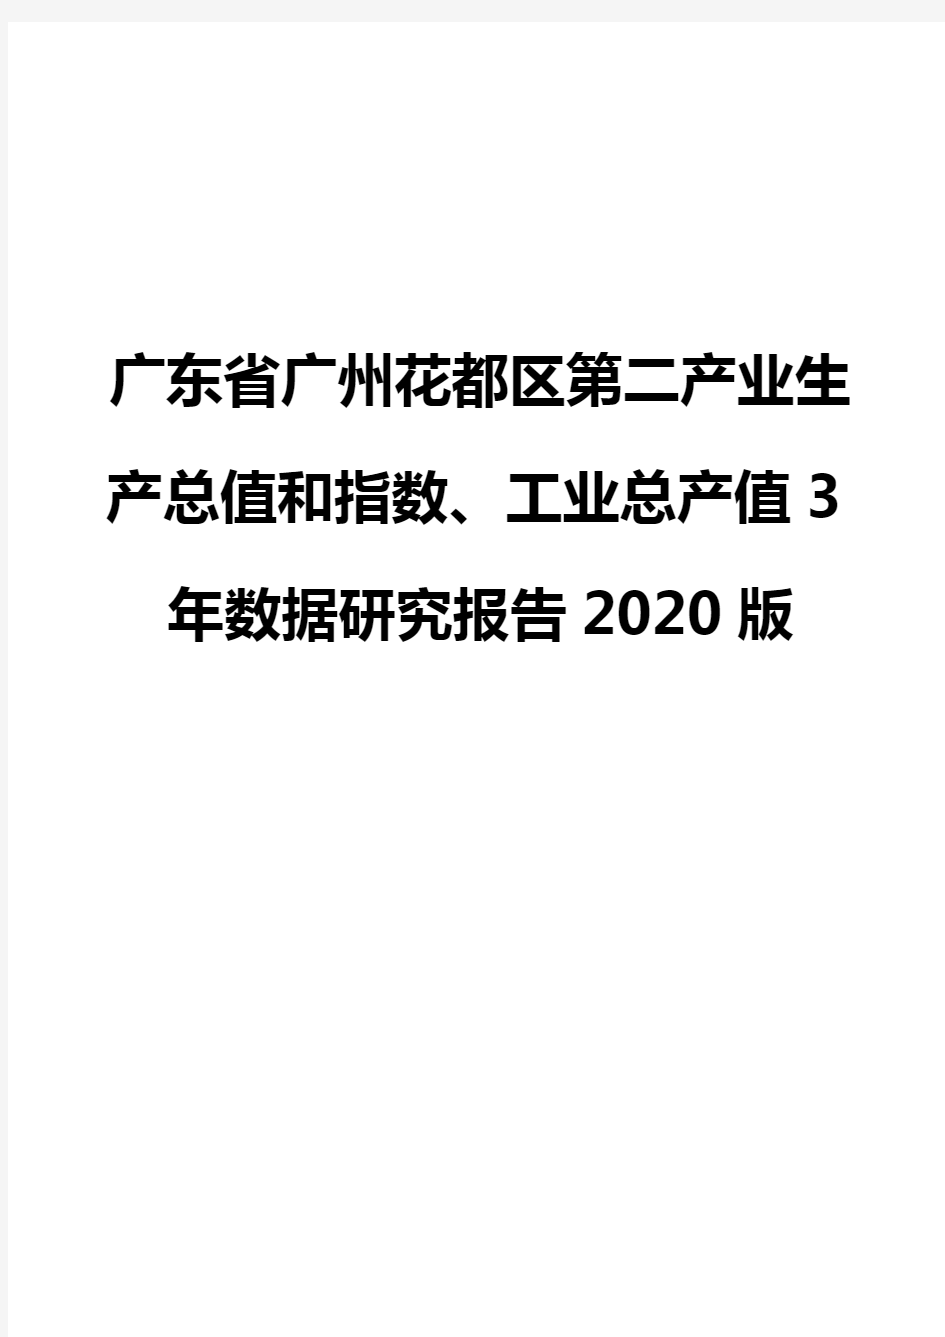 广东省广州花都区第二产业生产总值和指数、工业总产值3年数据研究报告2020版